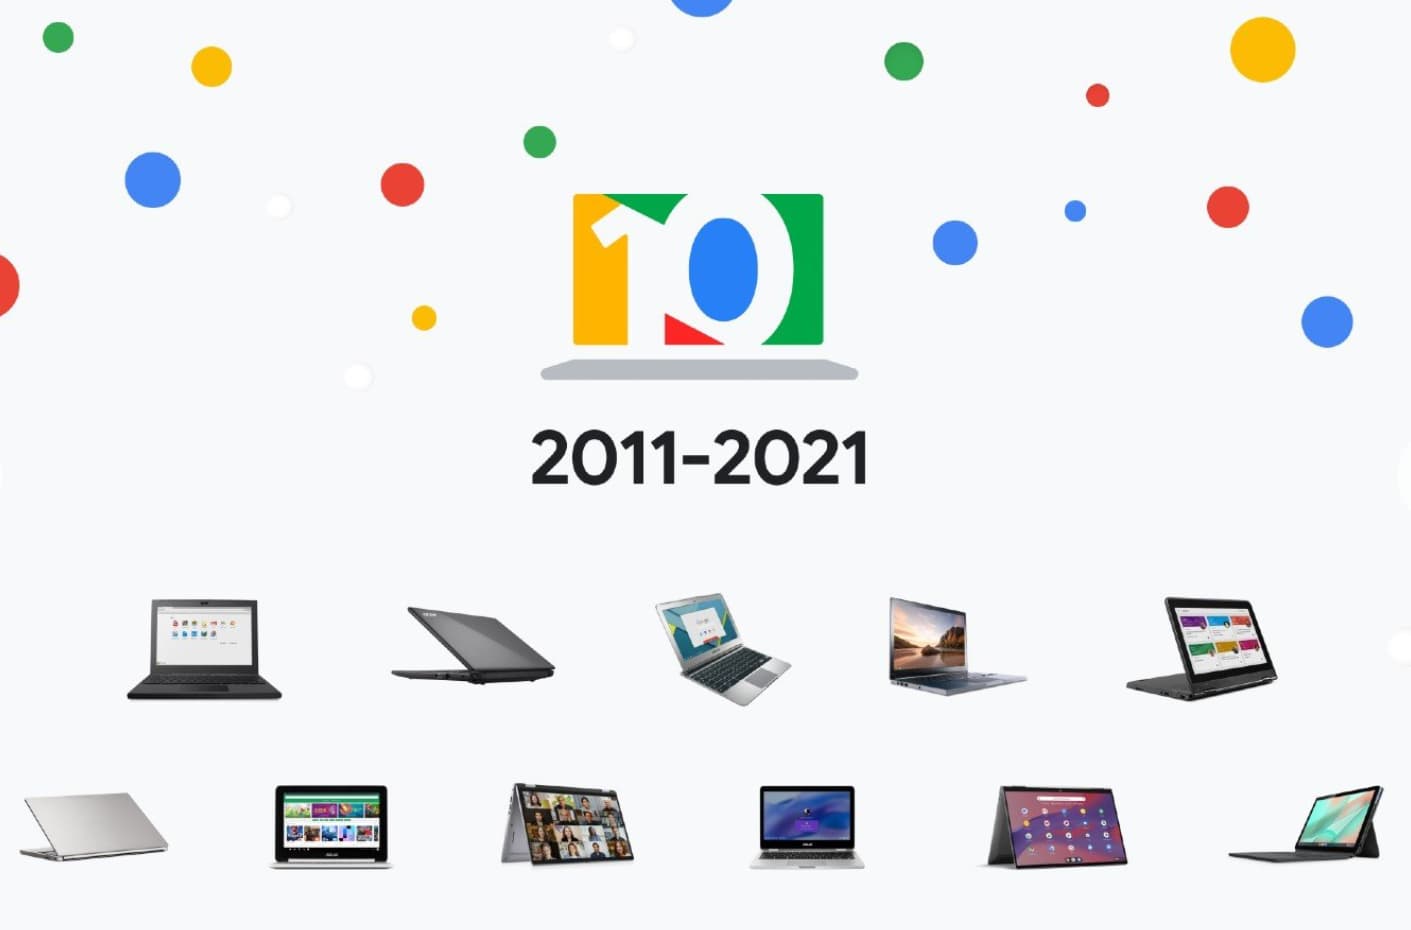 10 years of Chromebooks